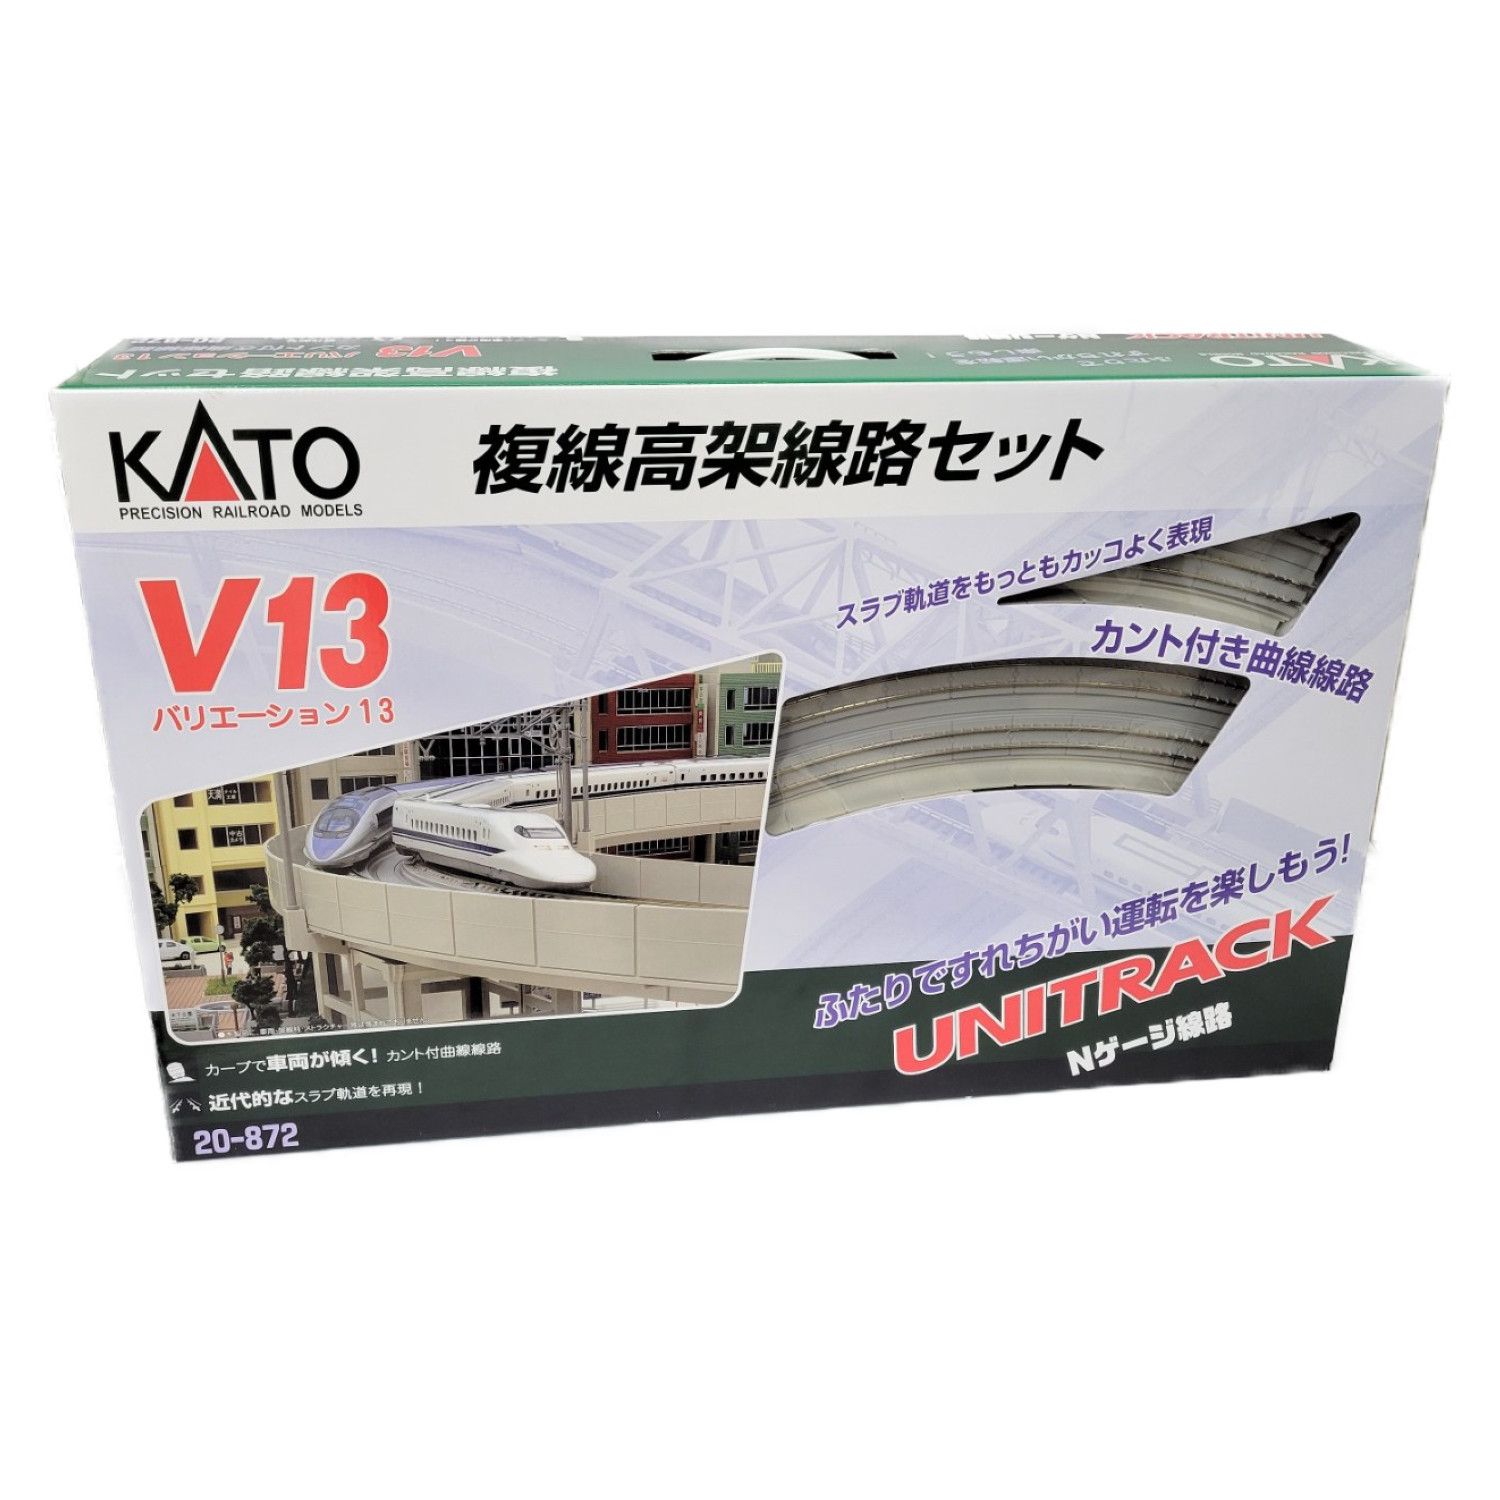 KATO (カトー) Nゲージ 20-872 V13 複線高架線路セット